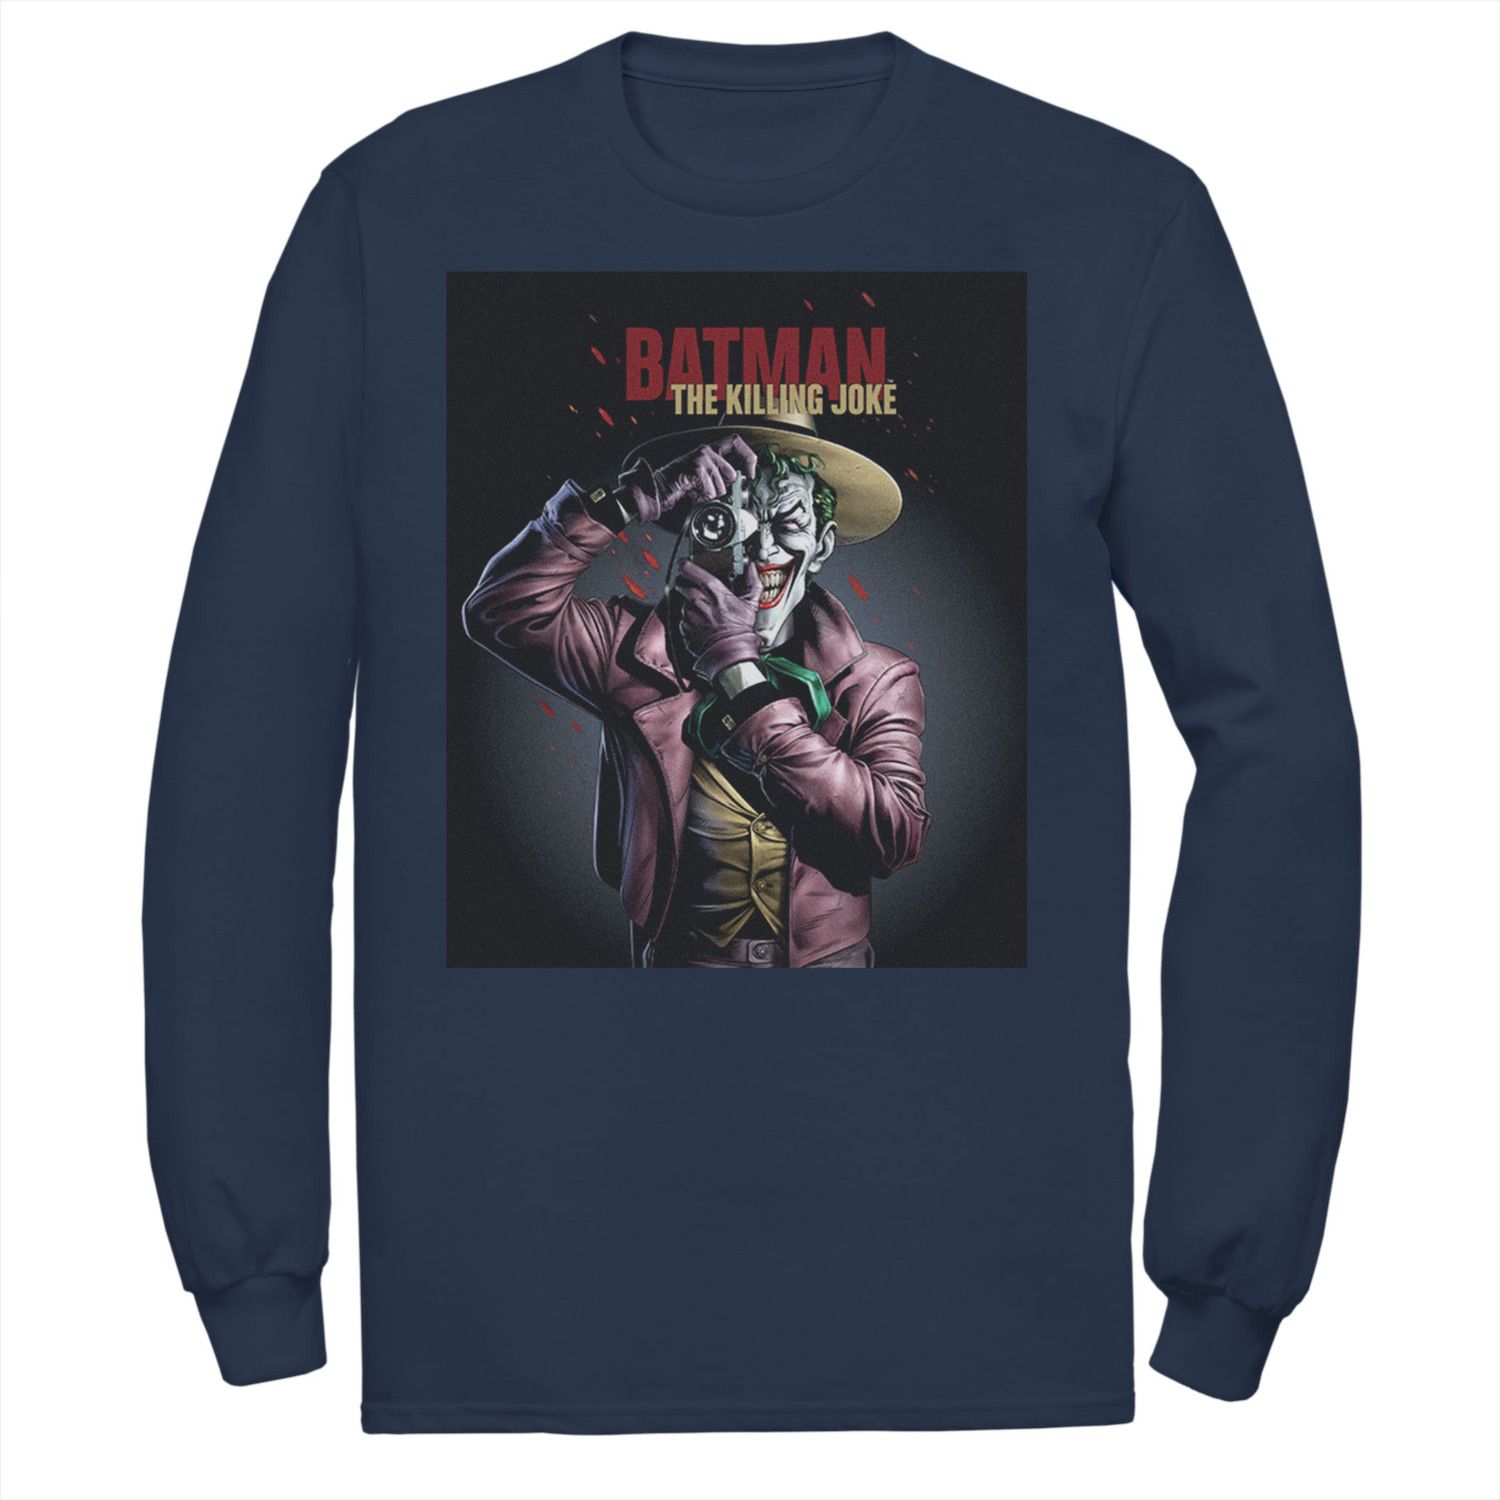 Мужская футболка с плакатом DC Comics Batman The Killing Joke Joker мужская футболка batman the killing joke dc comics